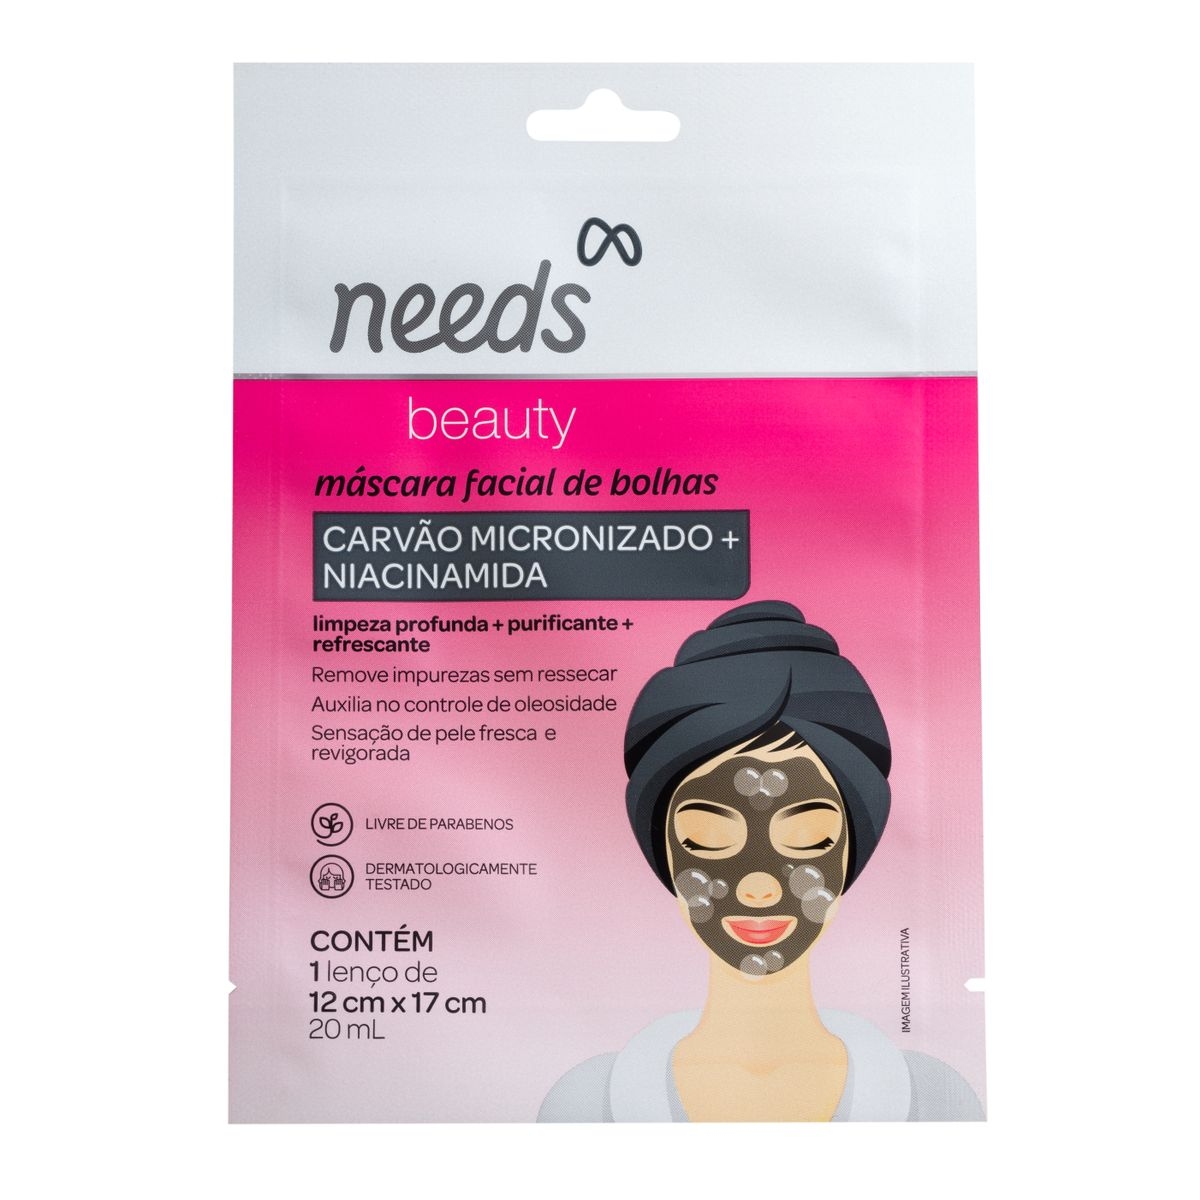 Compre agora Máscara Facial Needs Beauty Colágeno em oferta